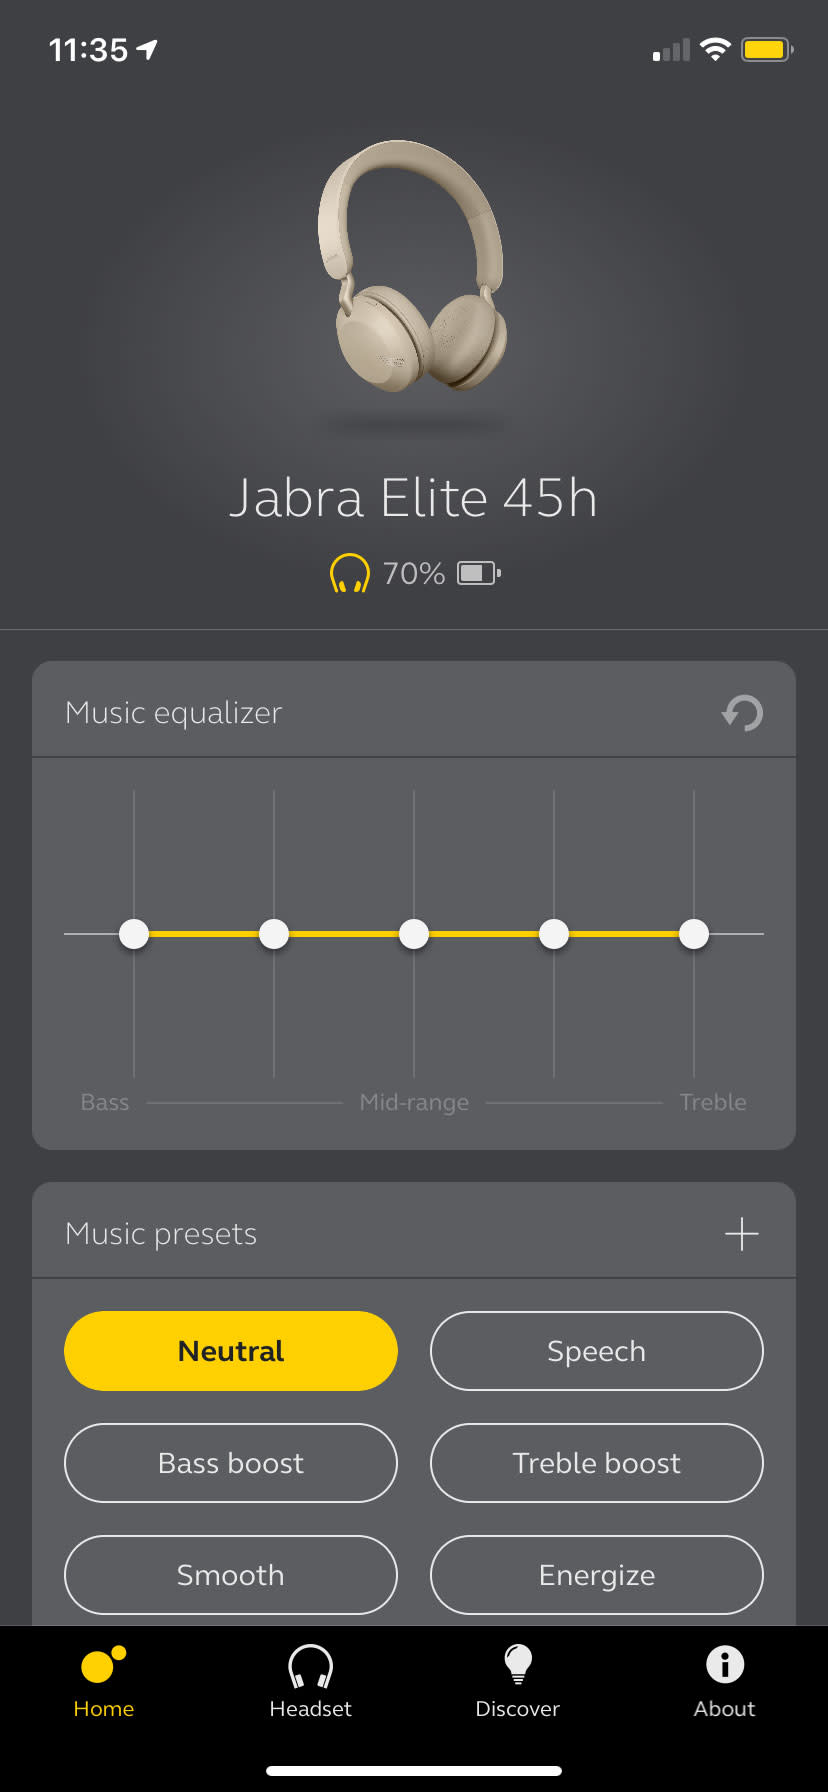 Jabra Elite 45h